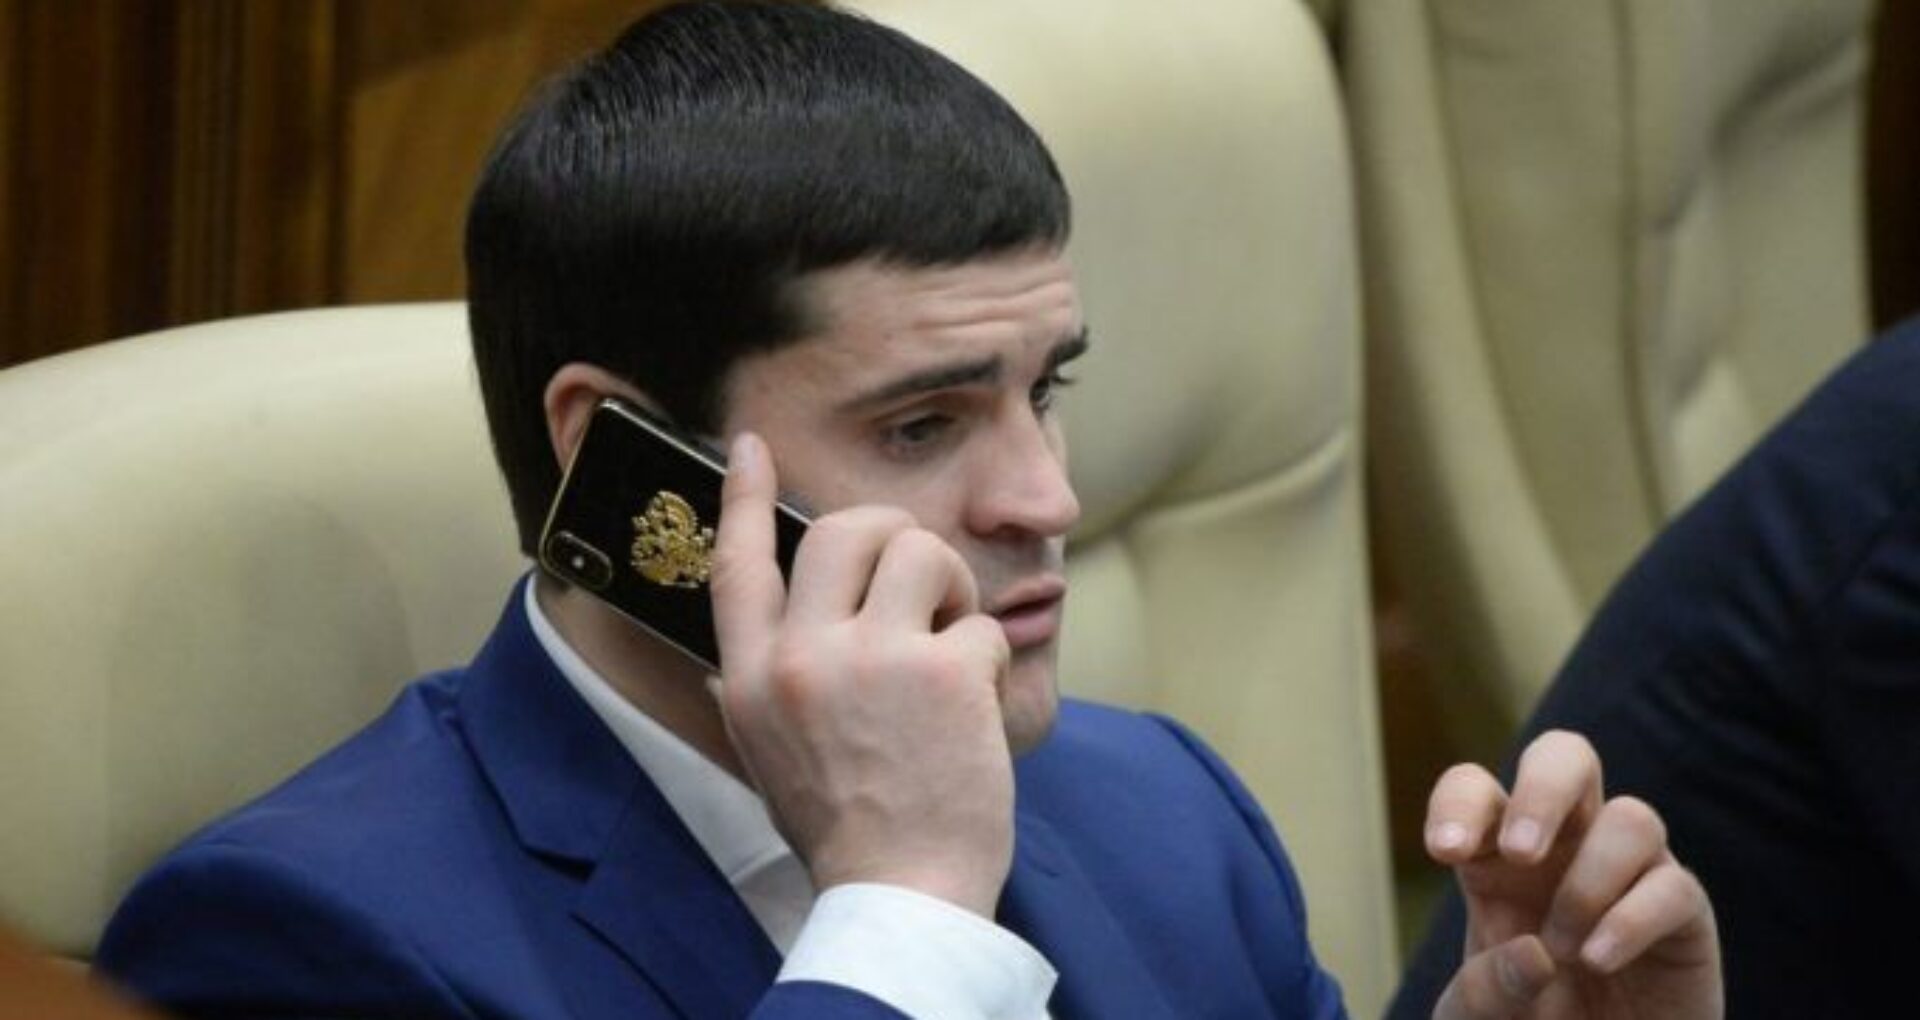 Dosarul în care fostul deputat al PDM Constantin Țuțu este cercetat pentru îmbogățire ilicită și fals în declarații:  i-a fost înaintată învinuirea și a fost terminată urmărirea penală. Procurorii anticorupție au aplicat sechestru pe imobilul fostului parlamentar